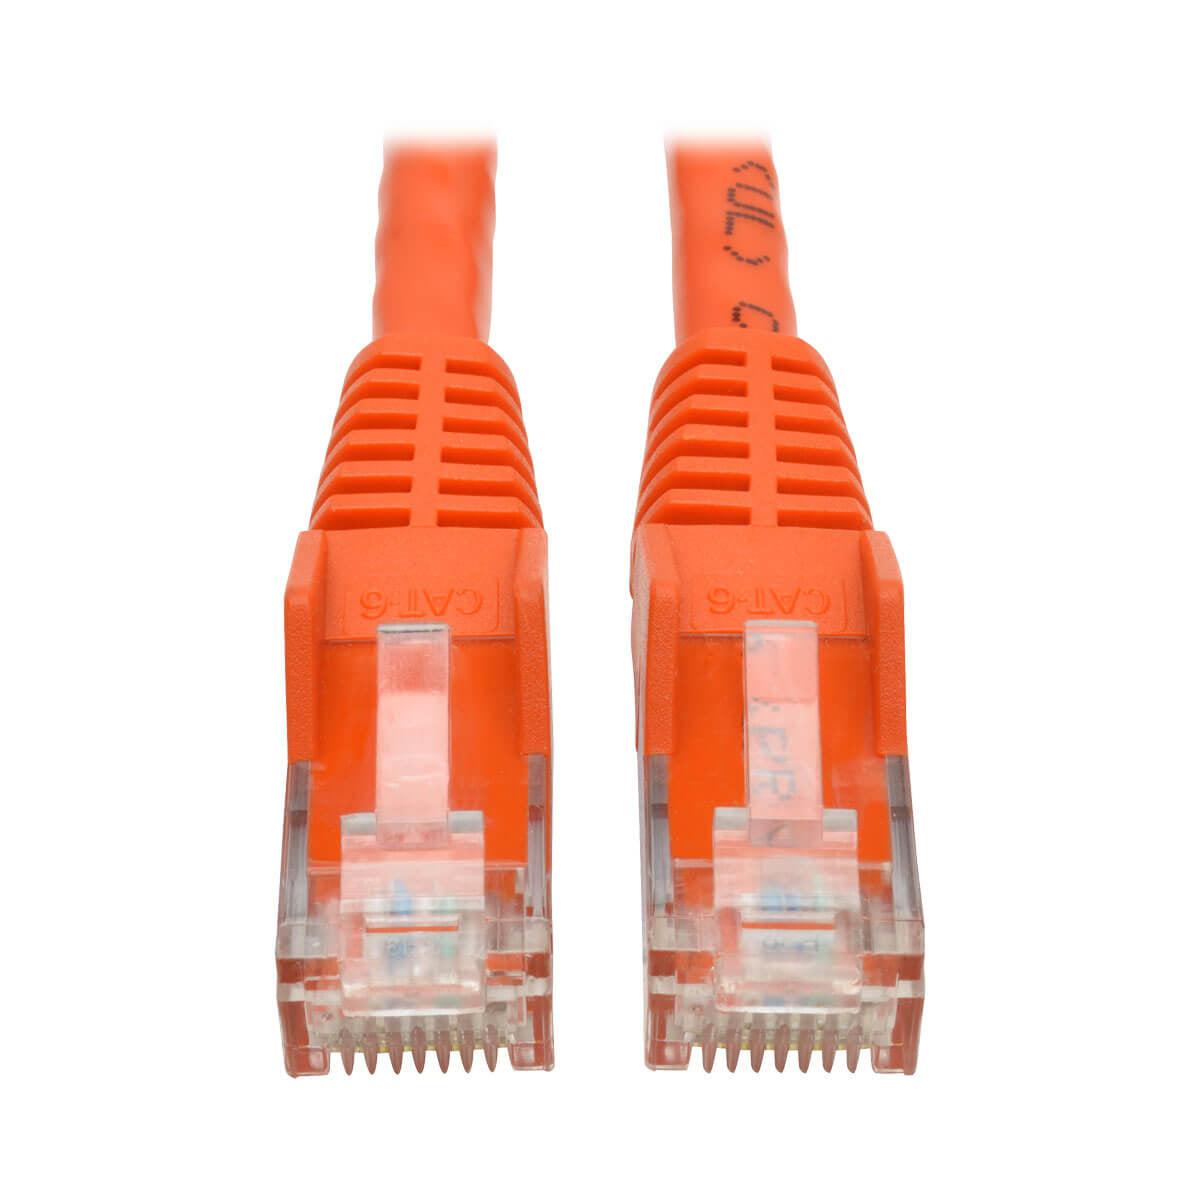 Tripp Lite N201-006-Or Cat6 Gigabit Snagless Molded (Utp) Ethernet Cable (Rj45 M/M), Orange, 6 Ft. (1.83 M)